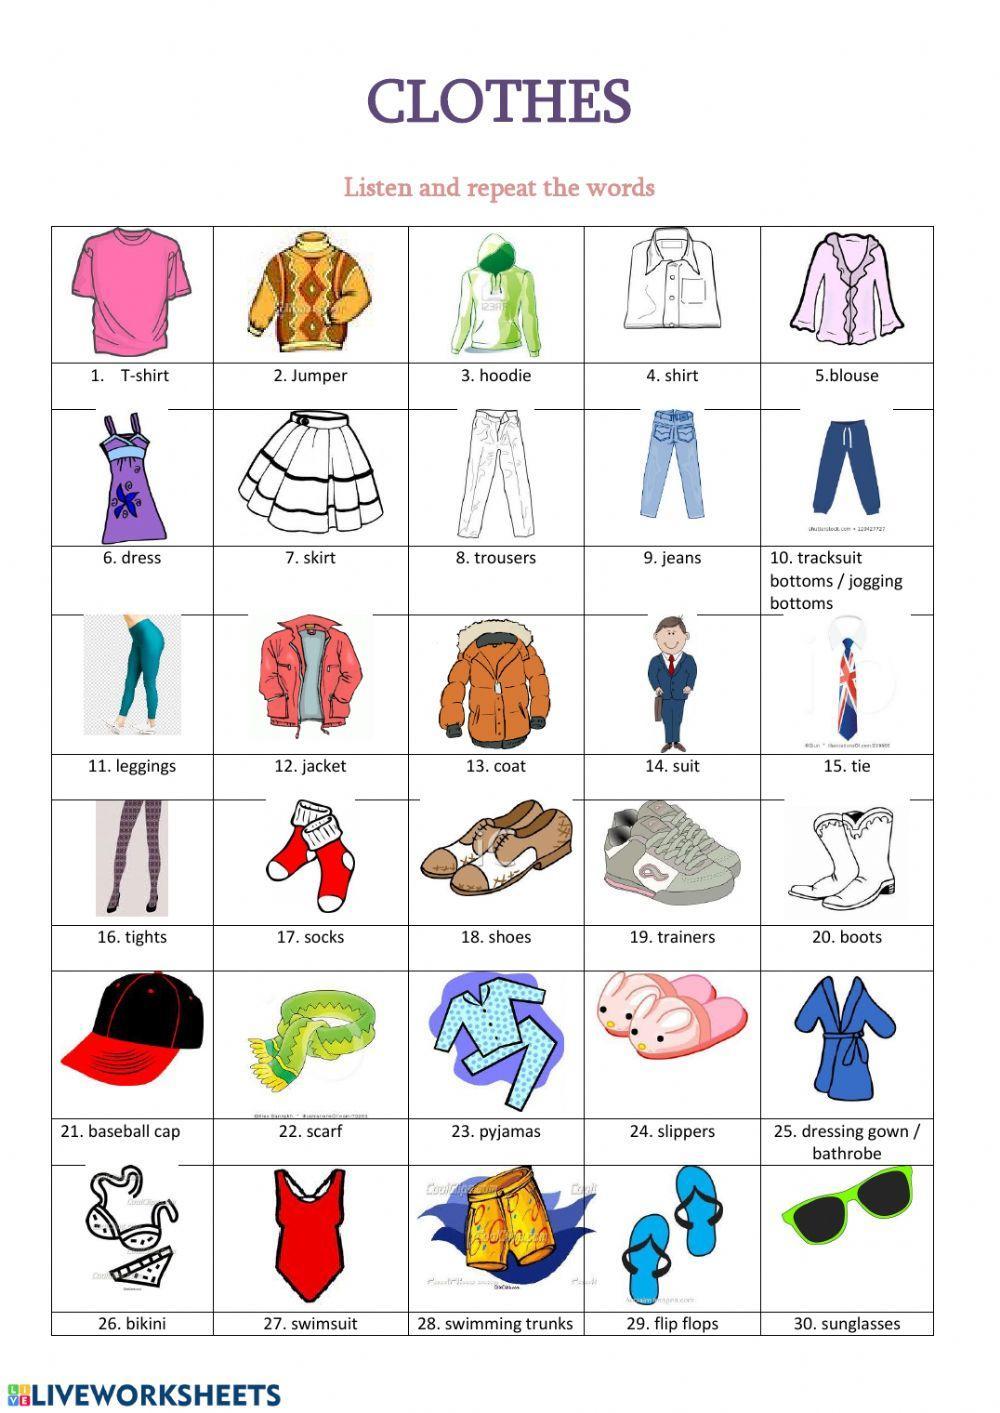 Clothes Vocabulary online worksheet | Live Worksheets